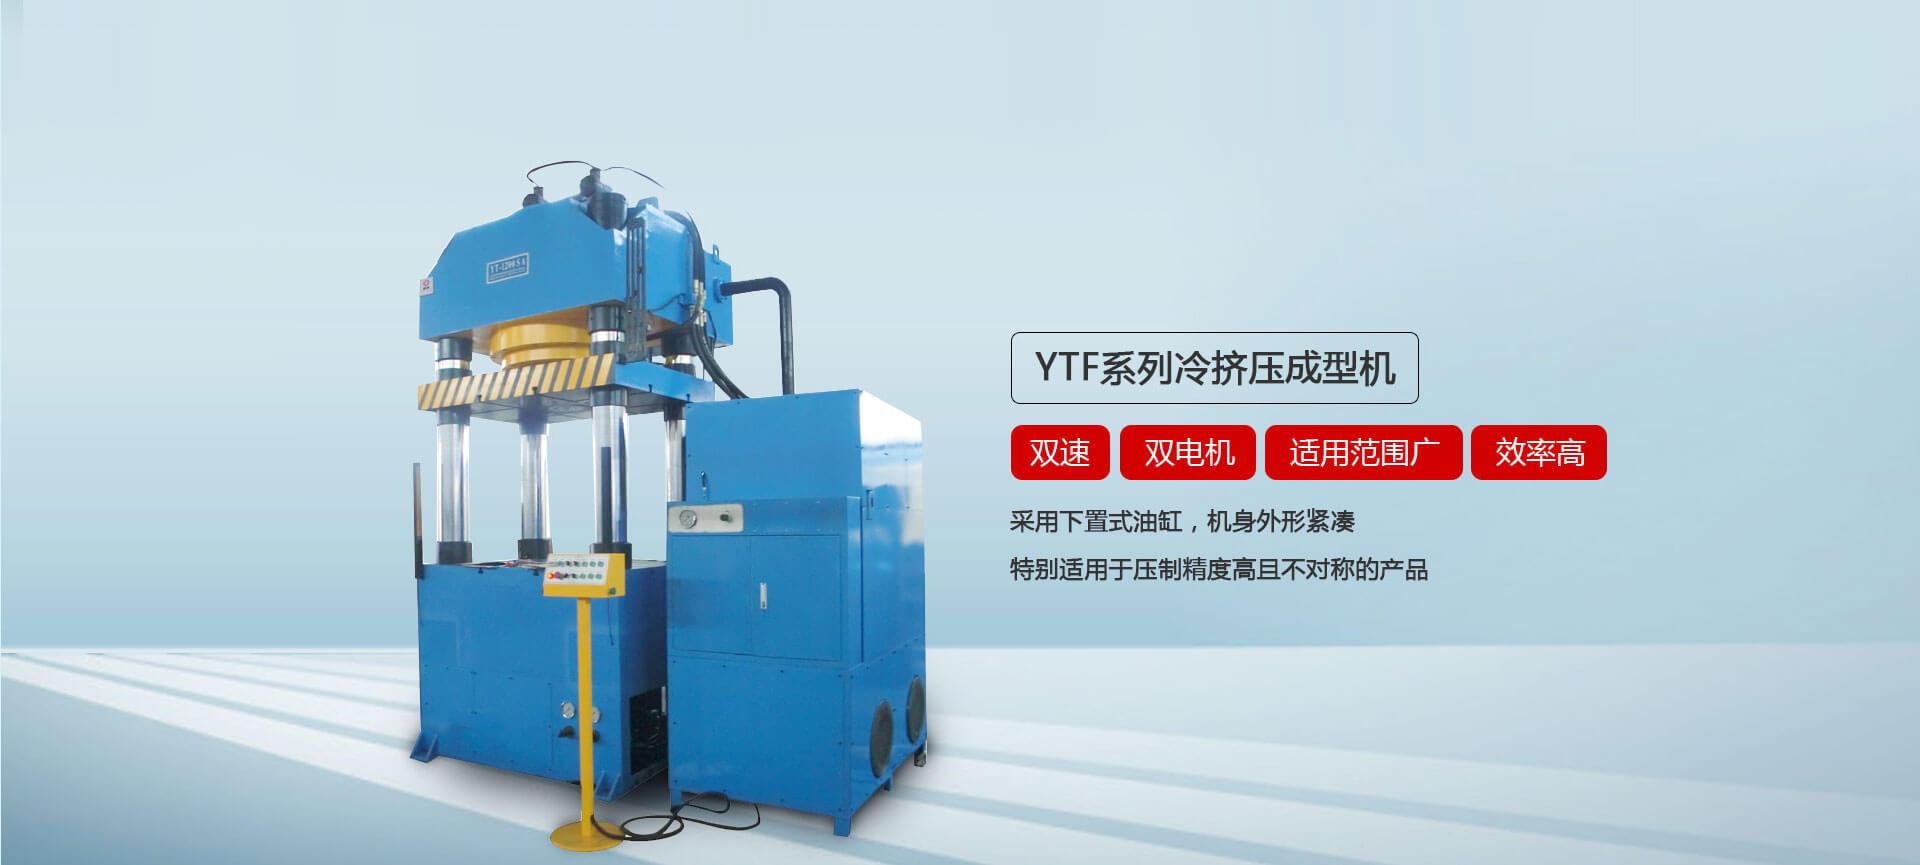 YTF系列冷挤压成型液压机